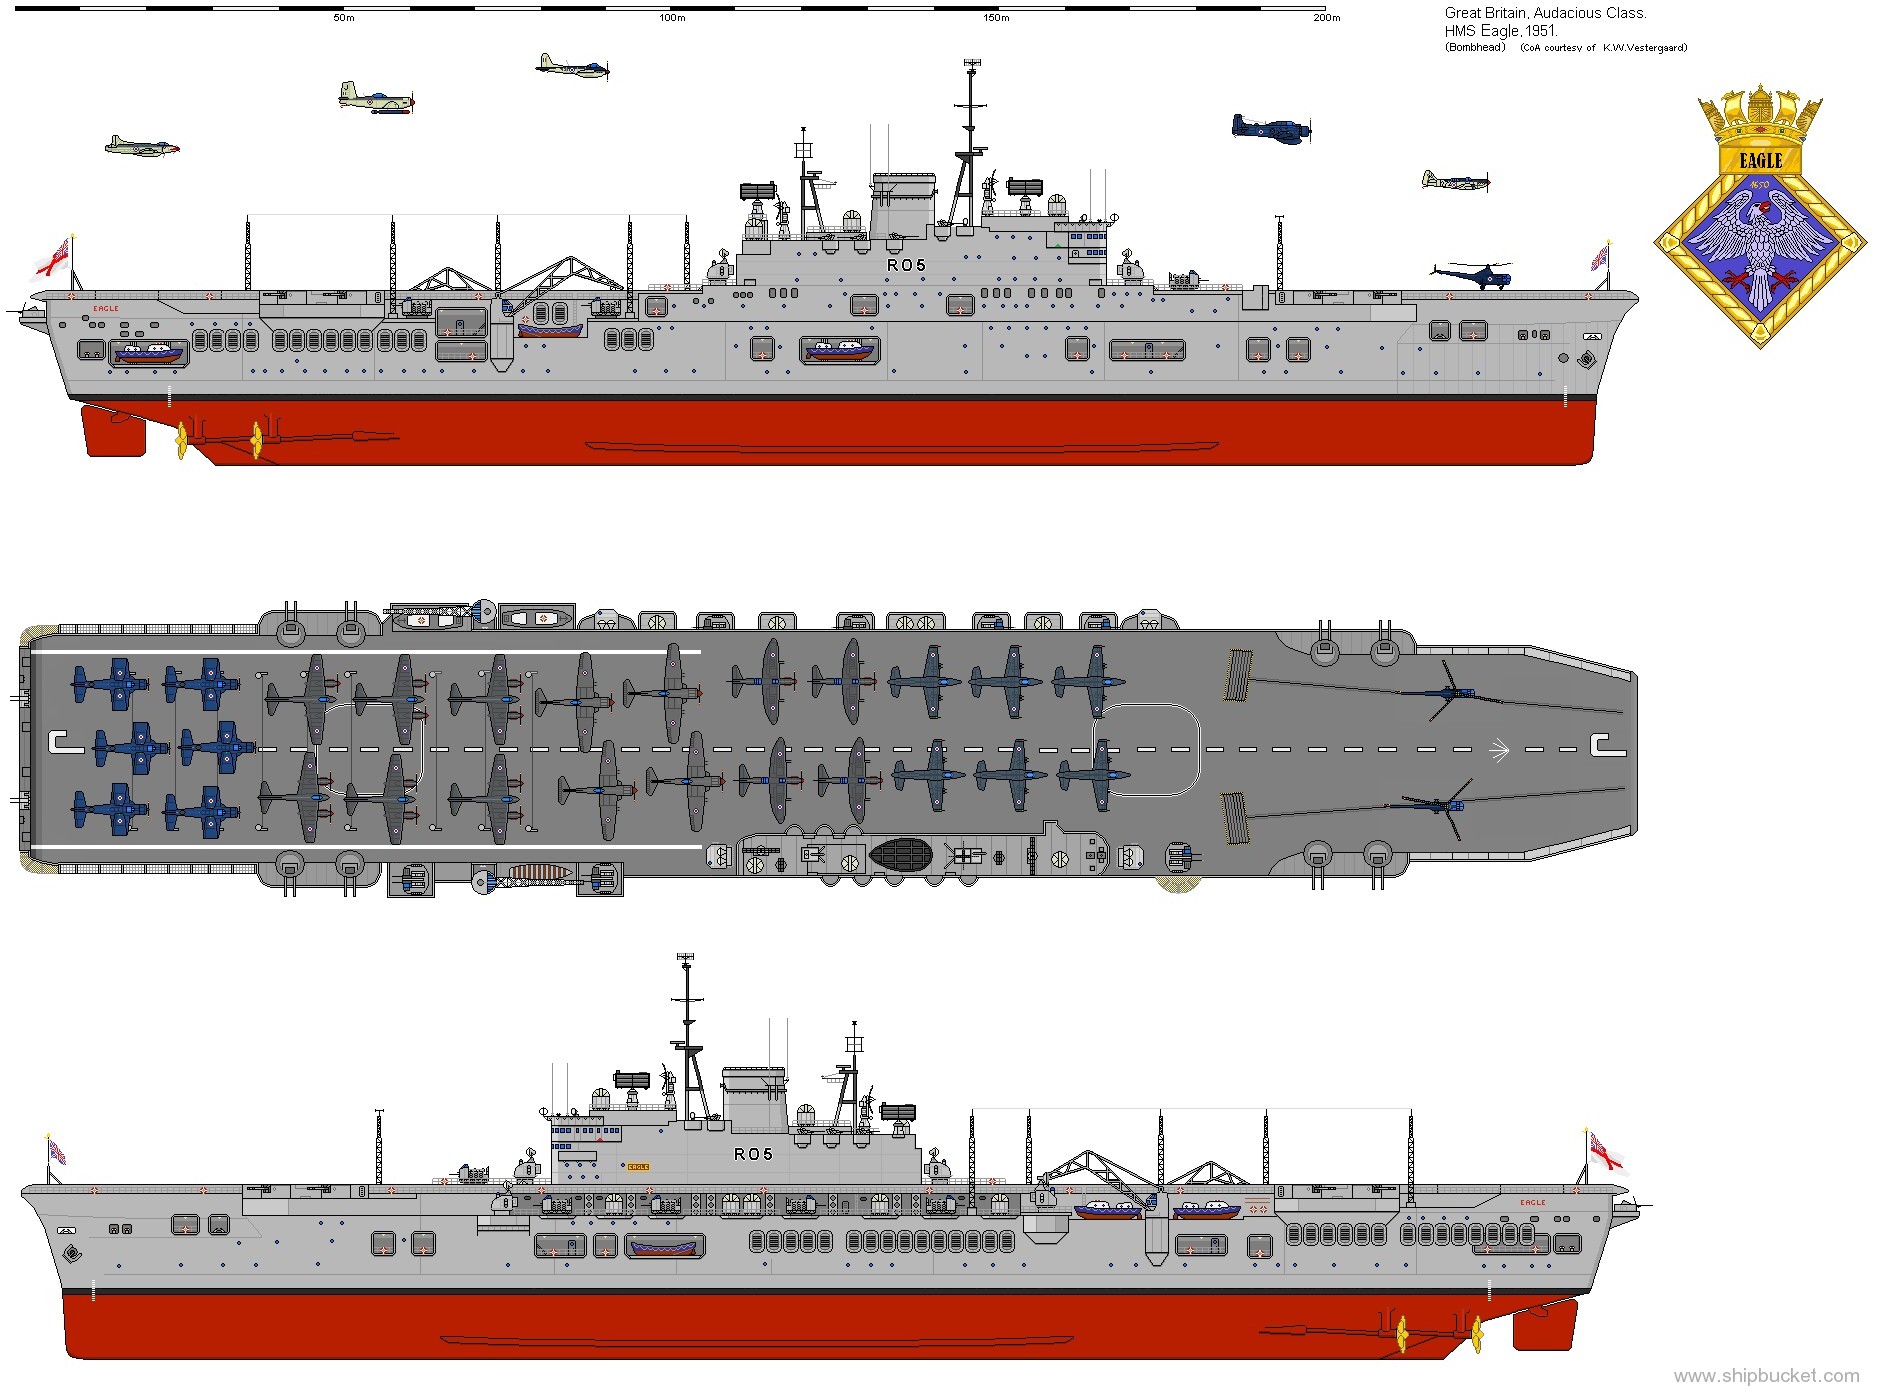 r-05 hms eagle audacious class aircraft carrier royal navy 05